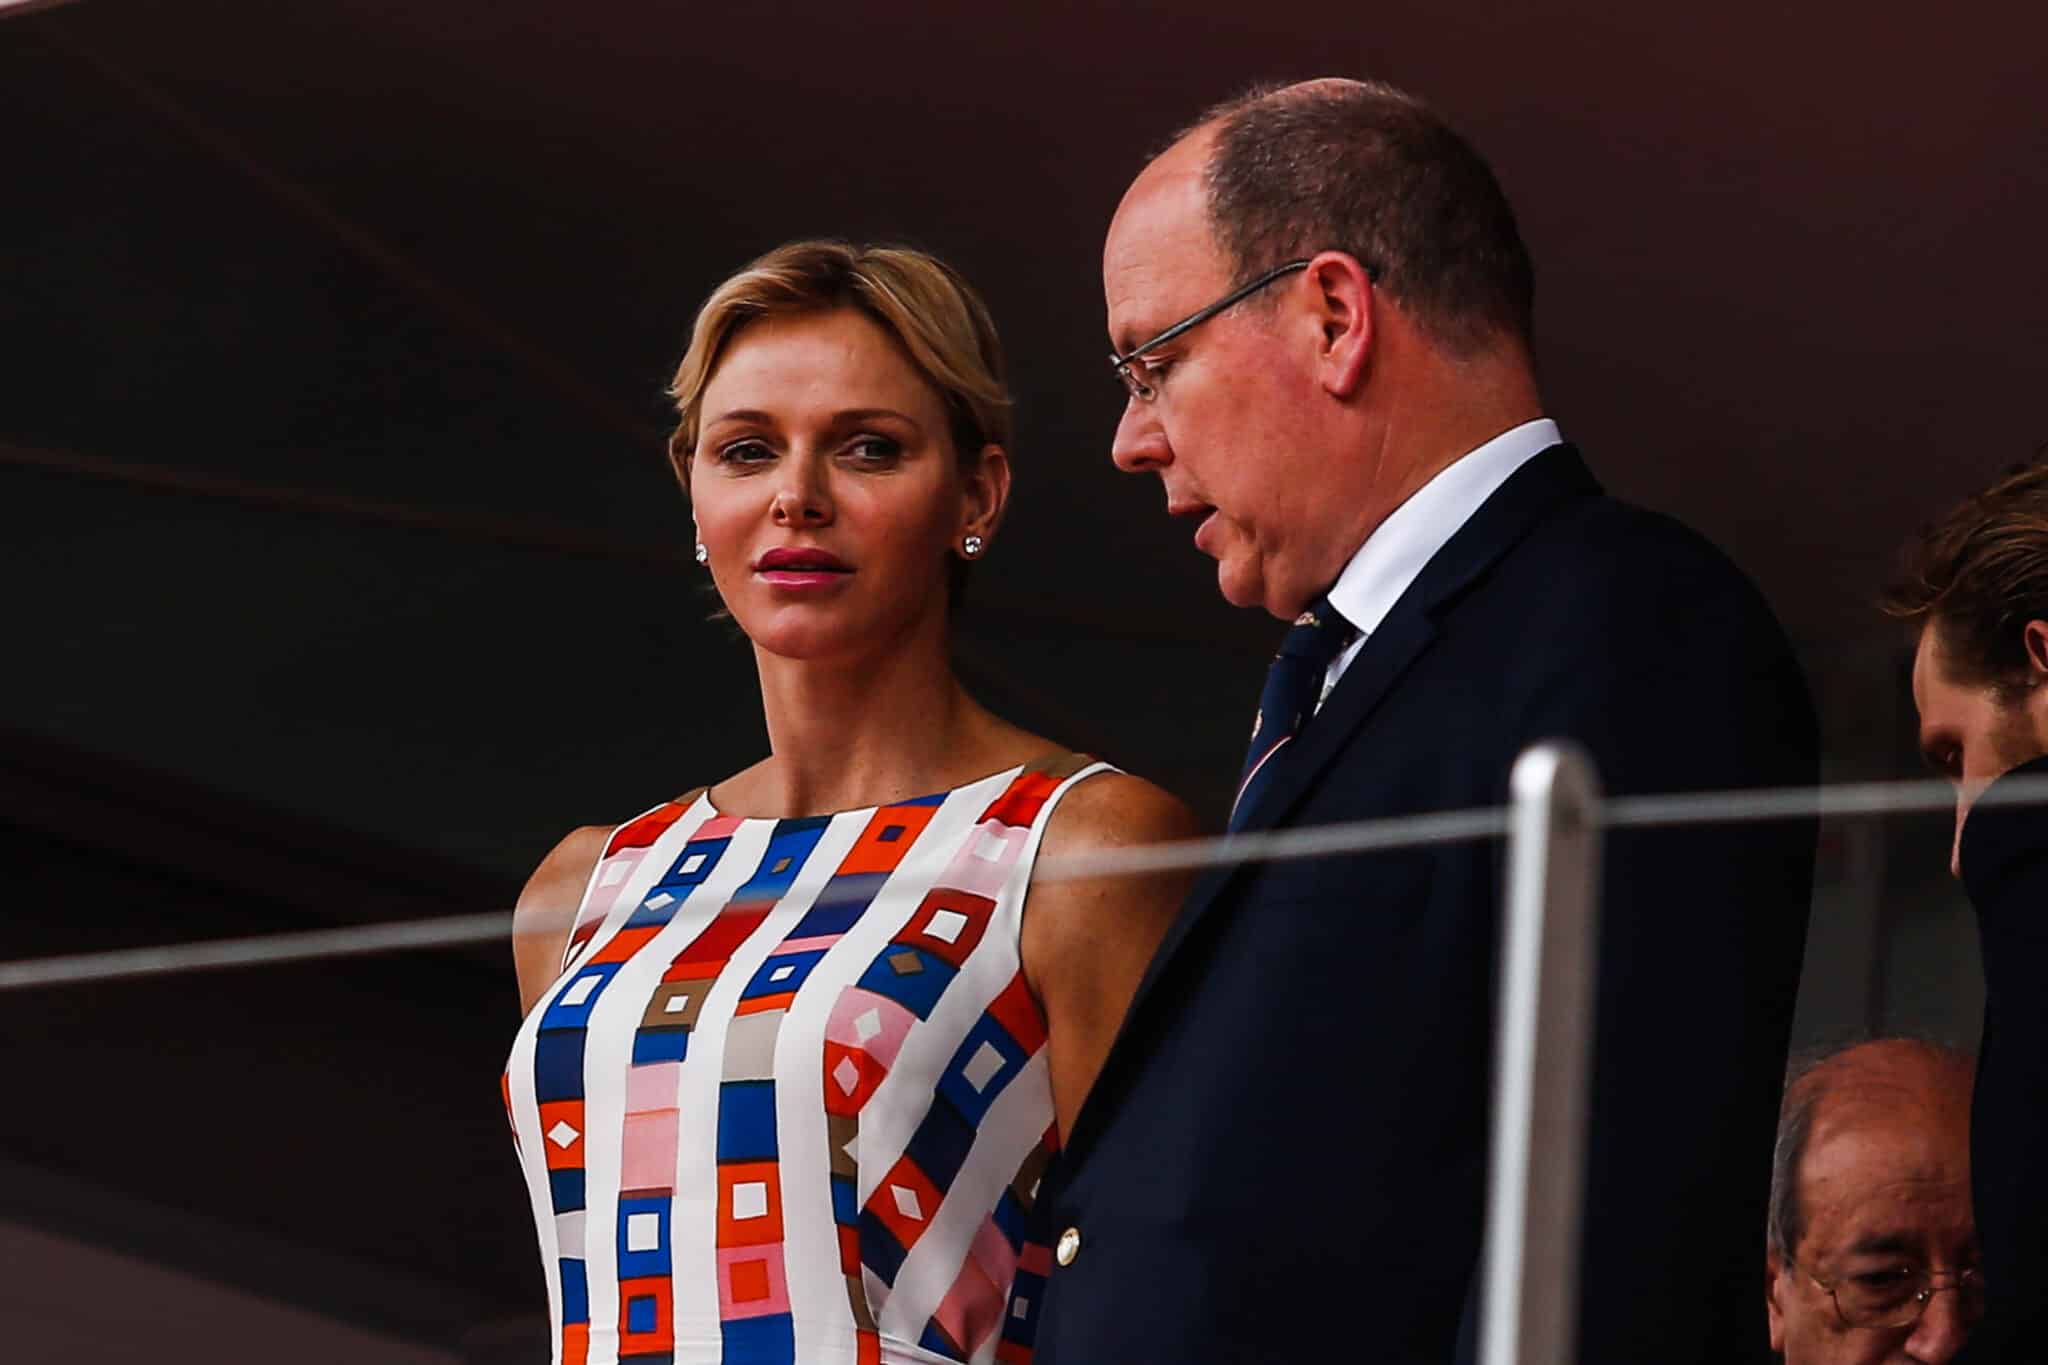 La princesa Charlene y el príncipe Alberto de Mónaco en un evento público